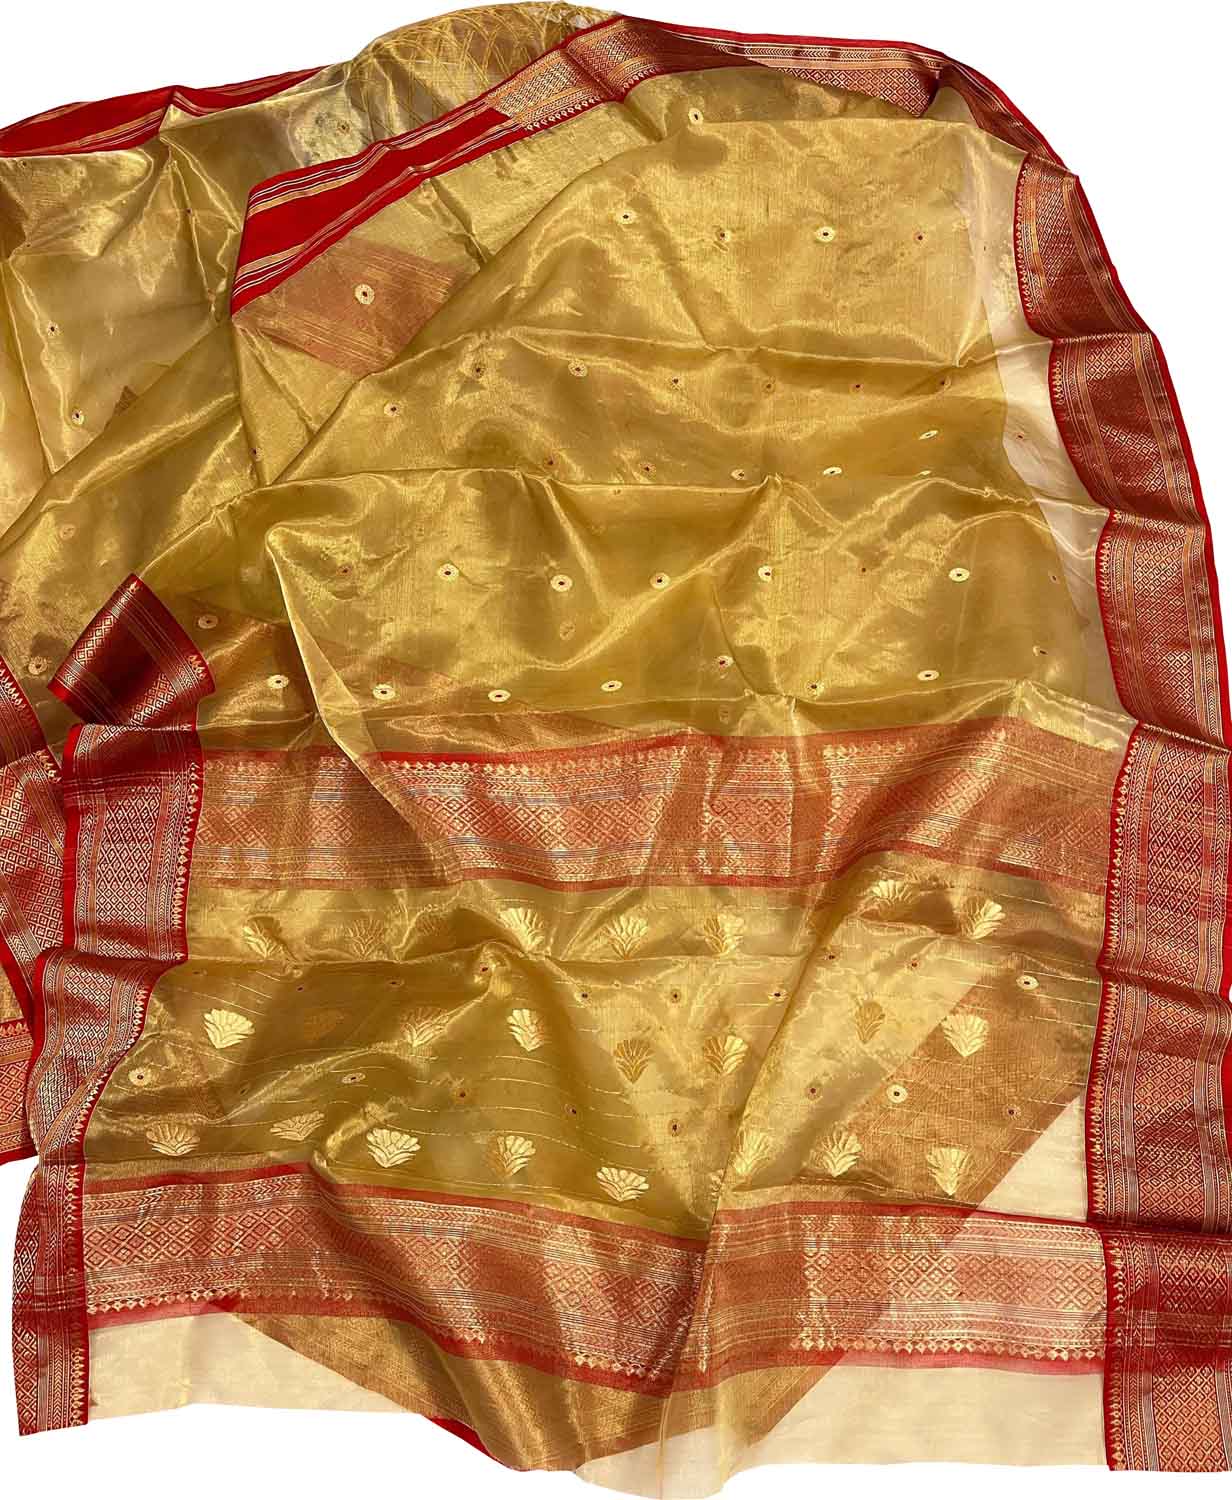 Exquisite Golden Chanderi Handloom Tissue Katan Organza Saree - Luxurion World